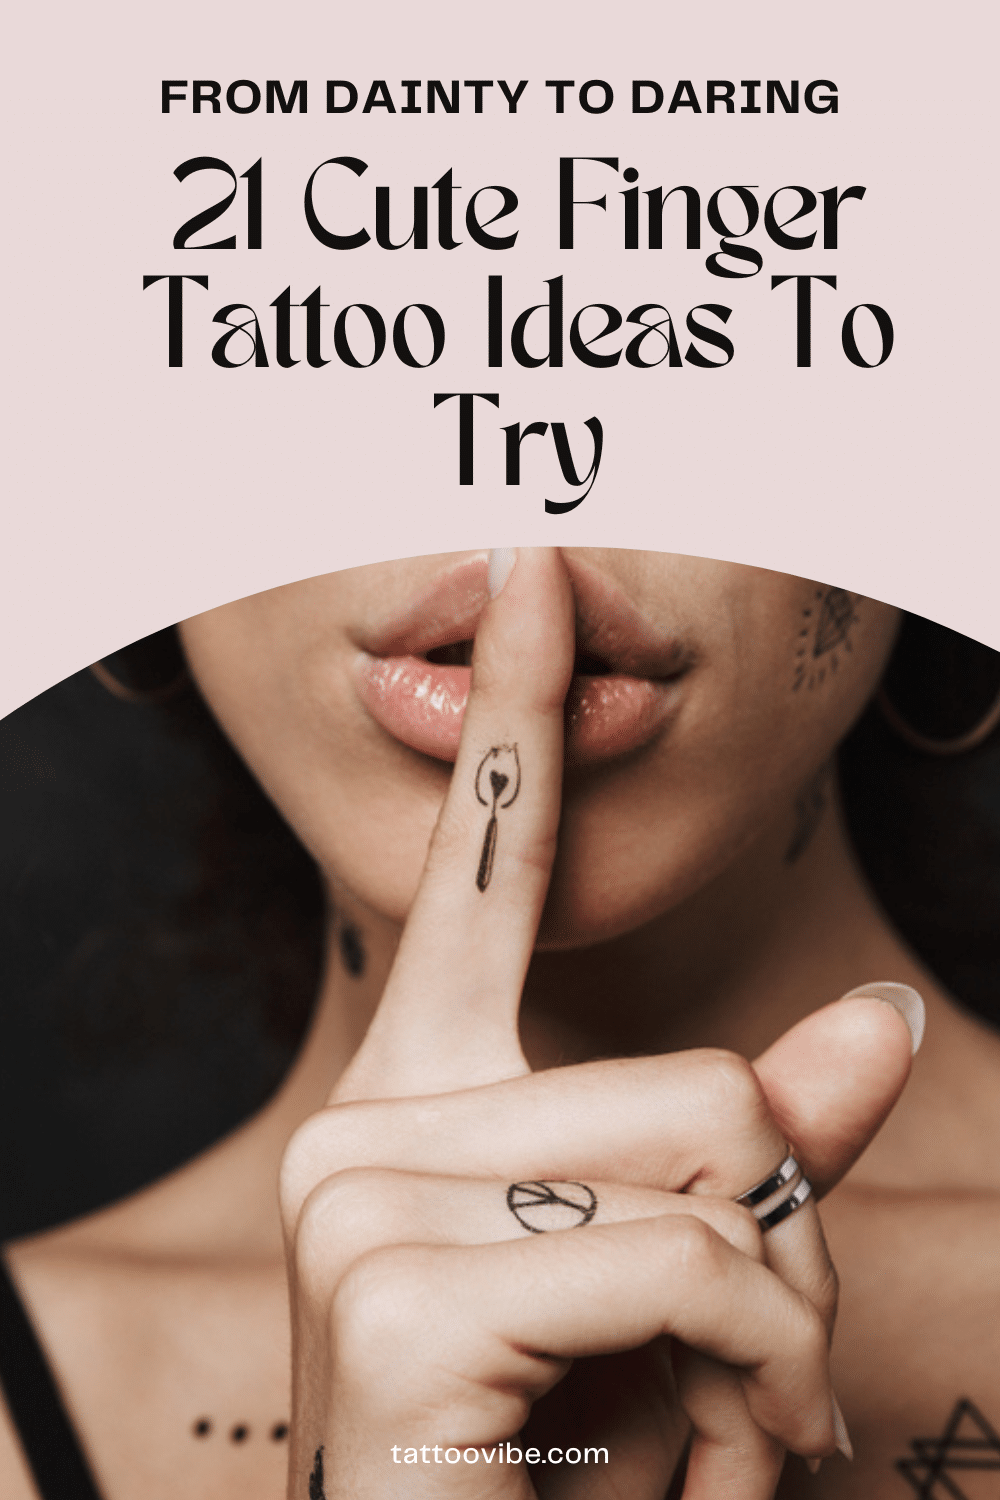 https://tattoovibe.com/cute-finger-tattoo-ideas/